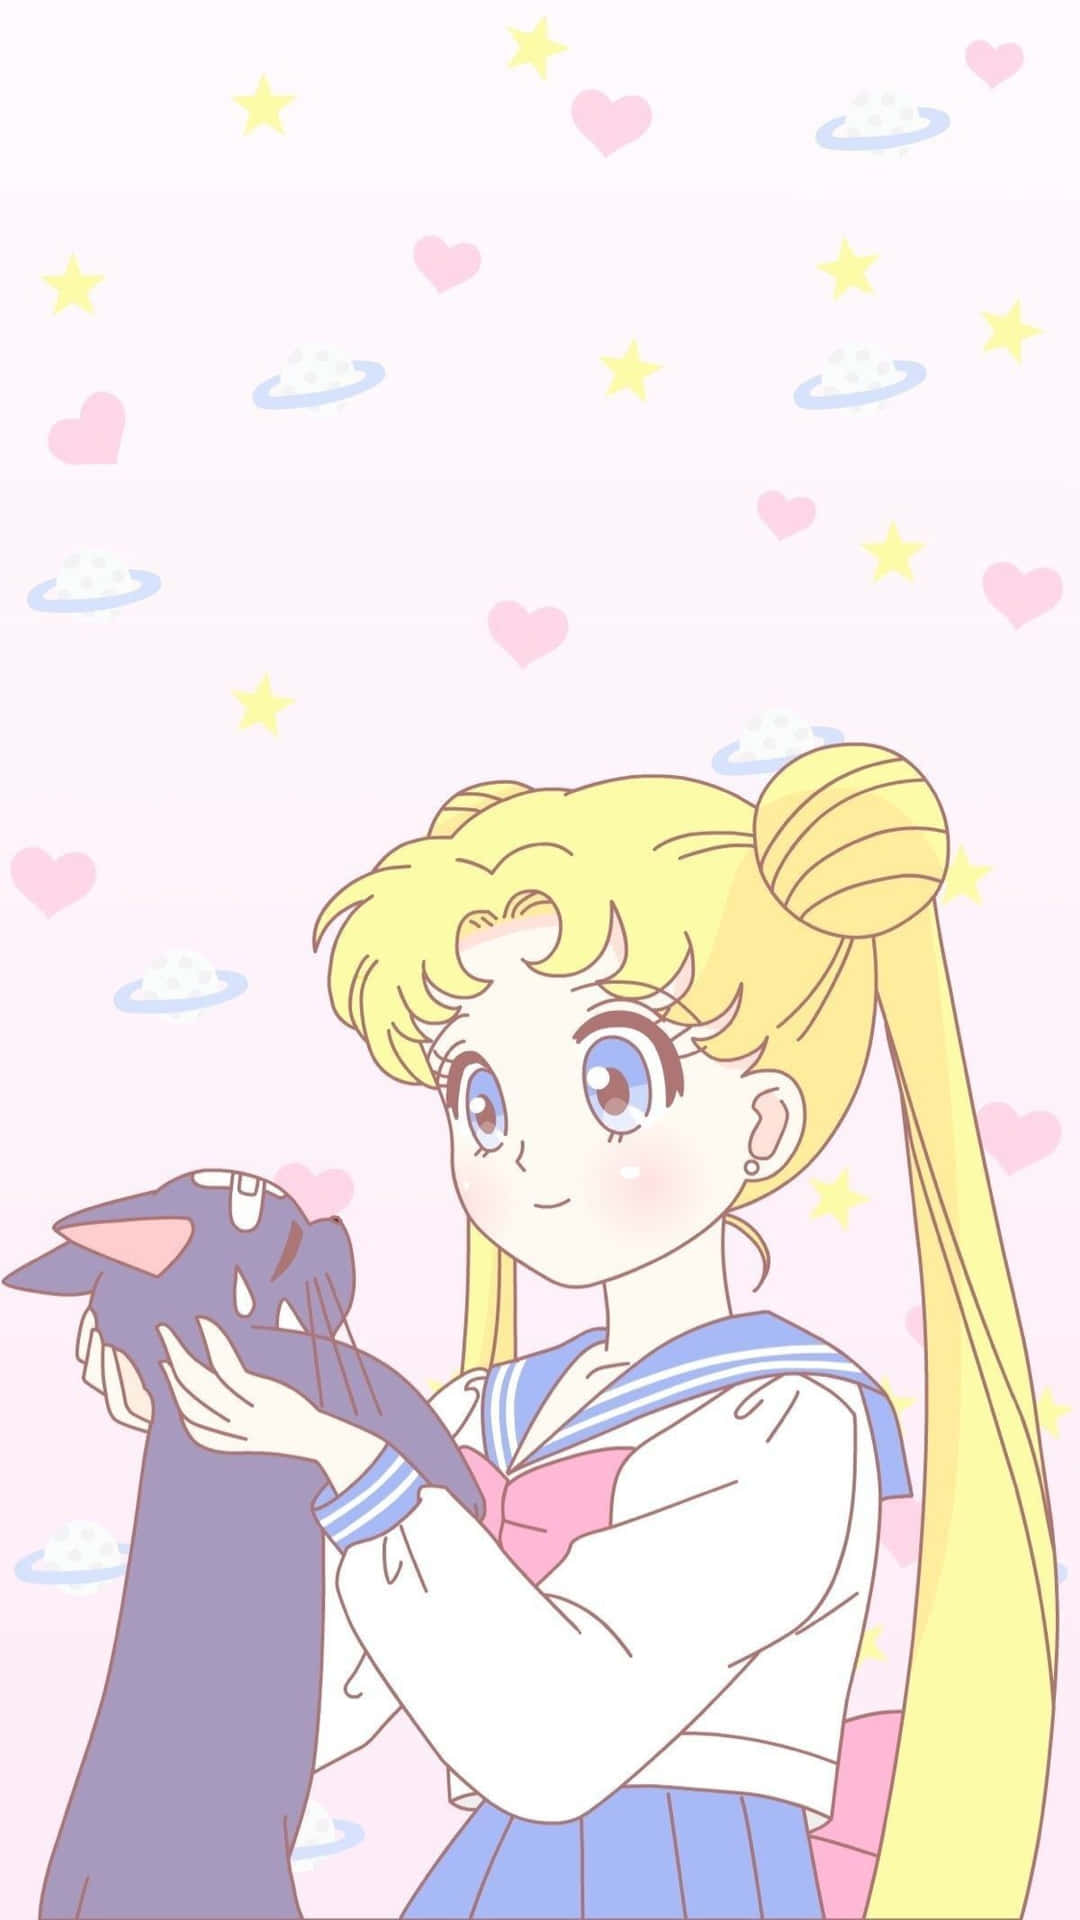 Tag en tur til de måneskinnede nattehimmel og se de smukke Sailor Moon og Luna figurer svæve gennem luften. Wallpaper